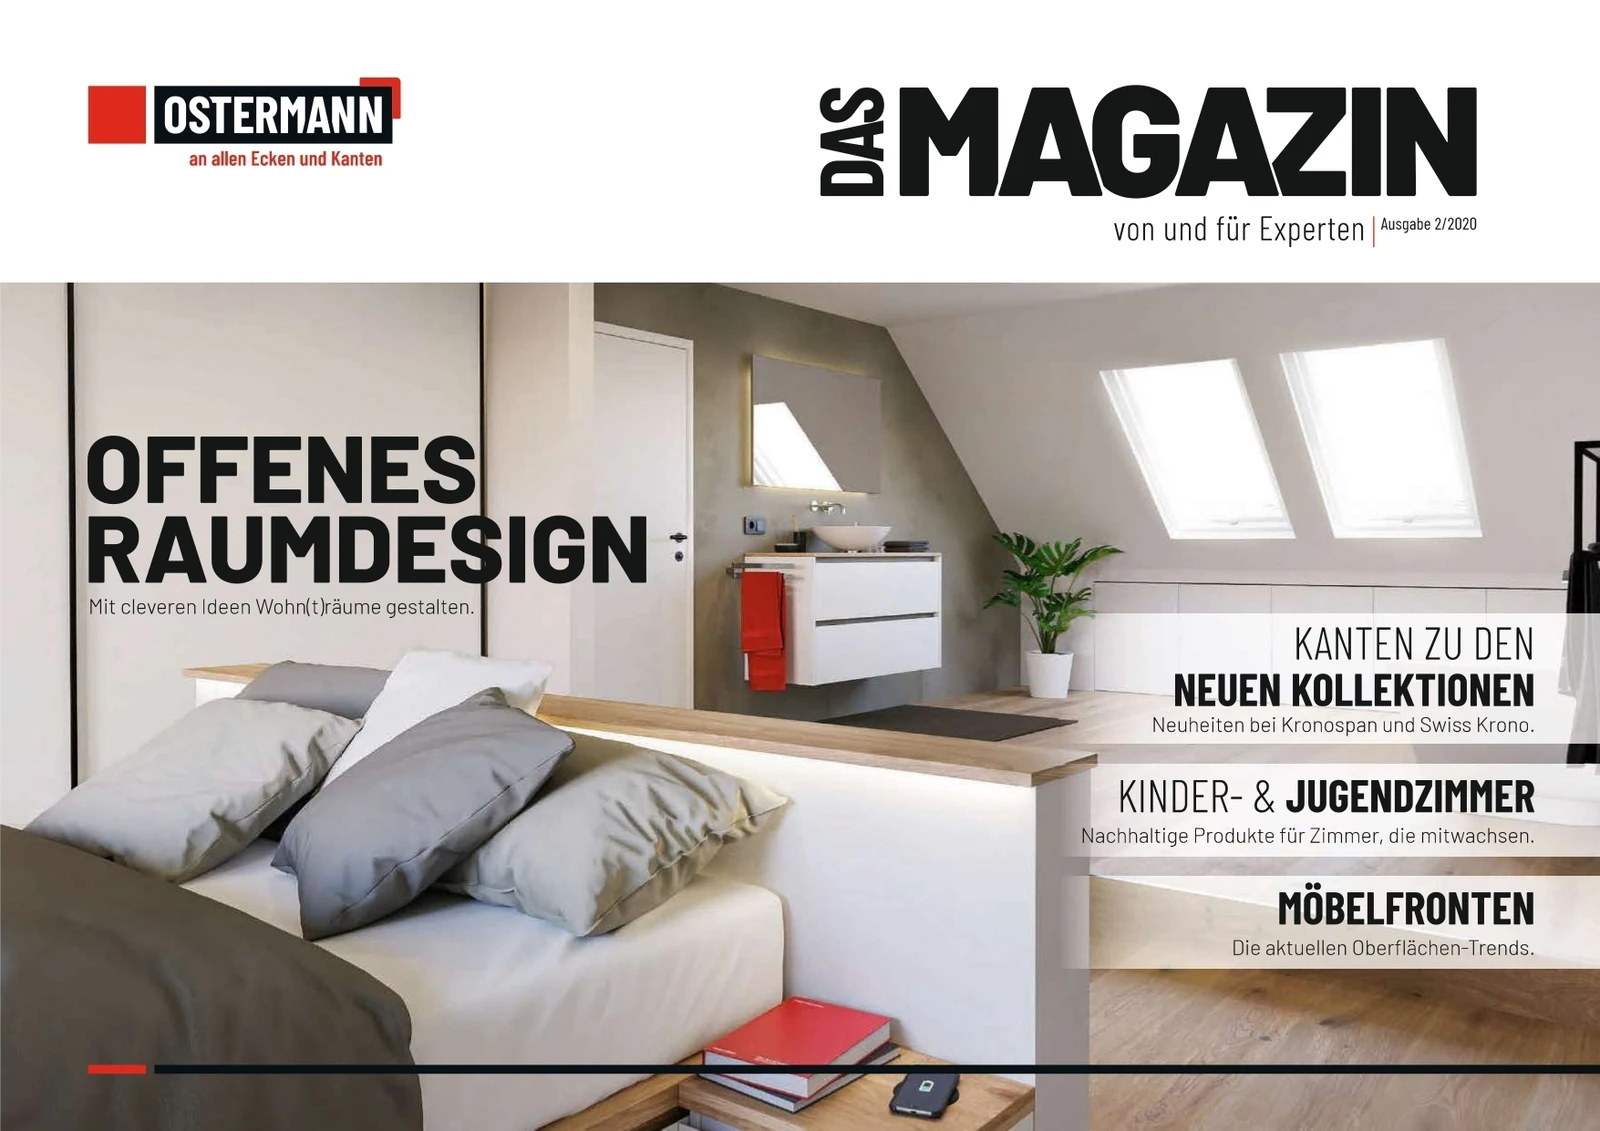 Offenes Raumdesign - Das Magazin 2 2020 Ostermann